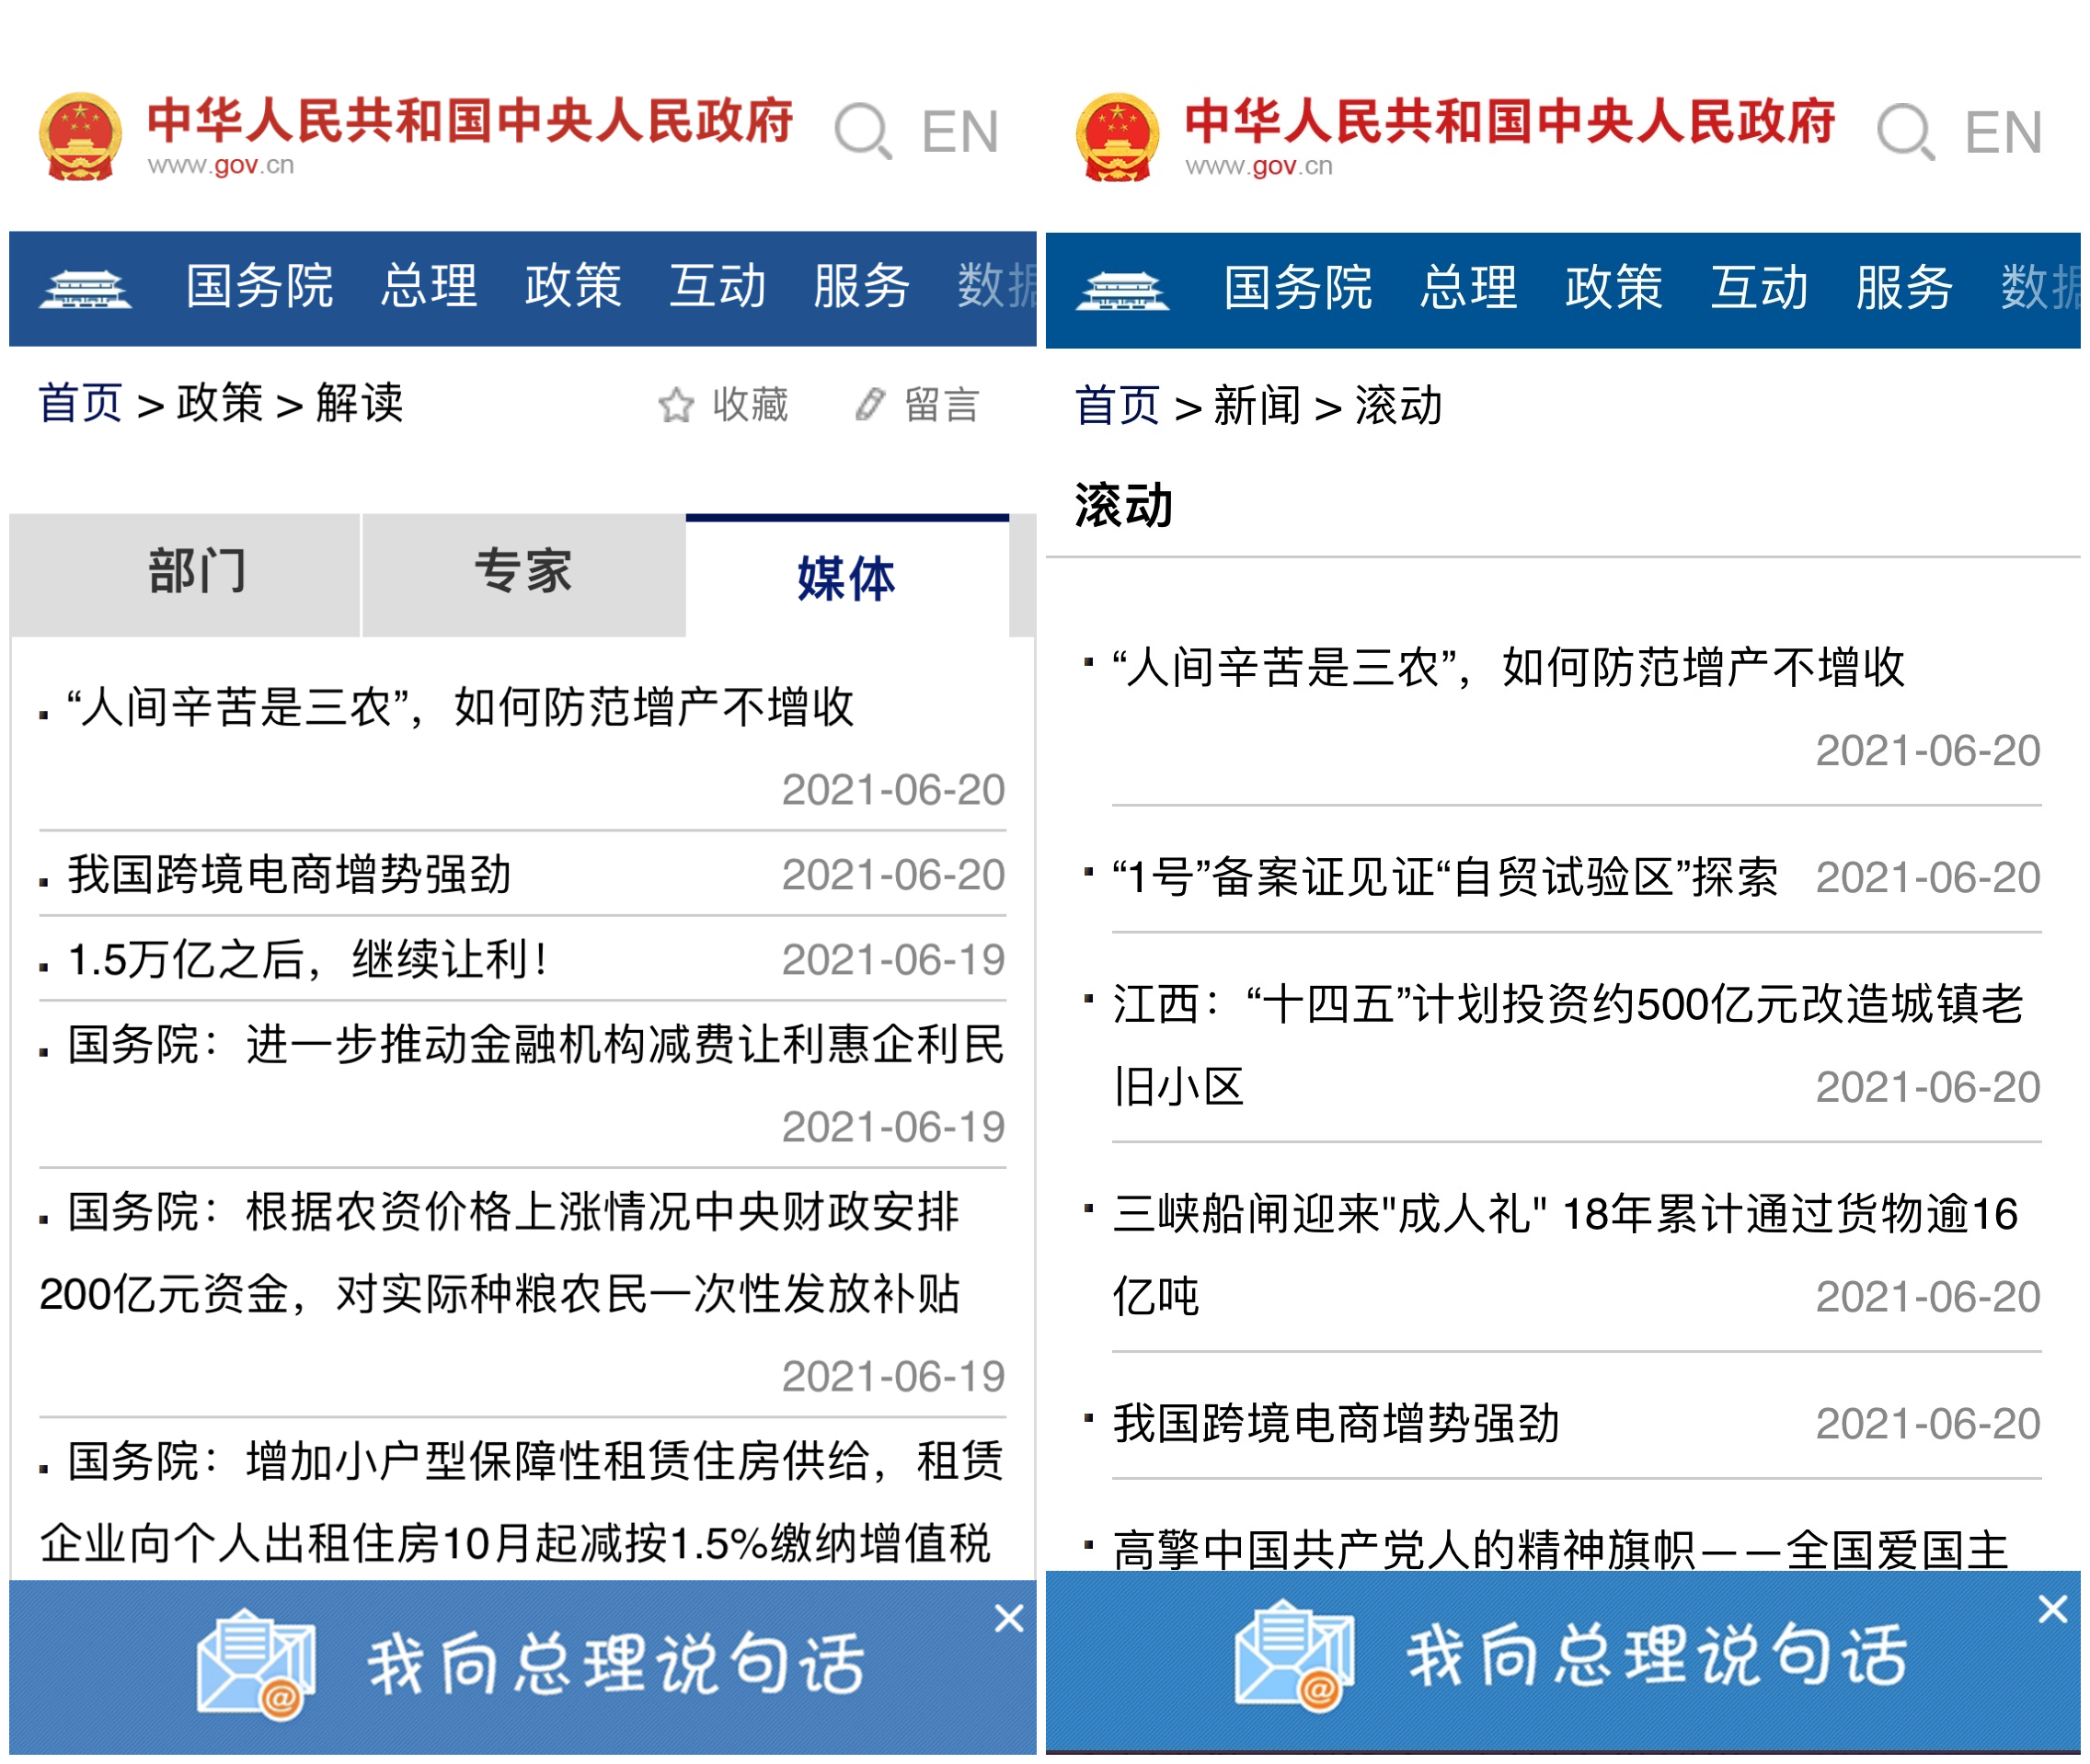 图2 中国政府网政策频道、新闻频道共同全文转载